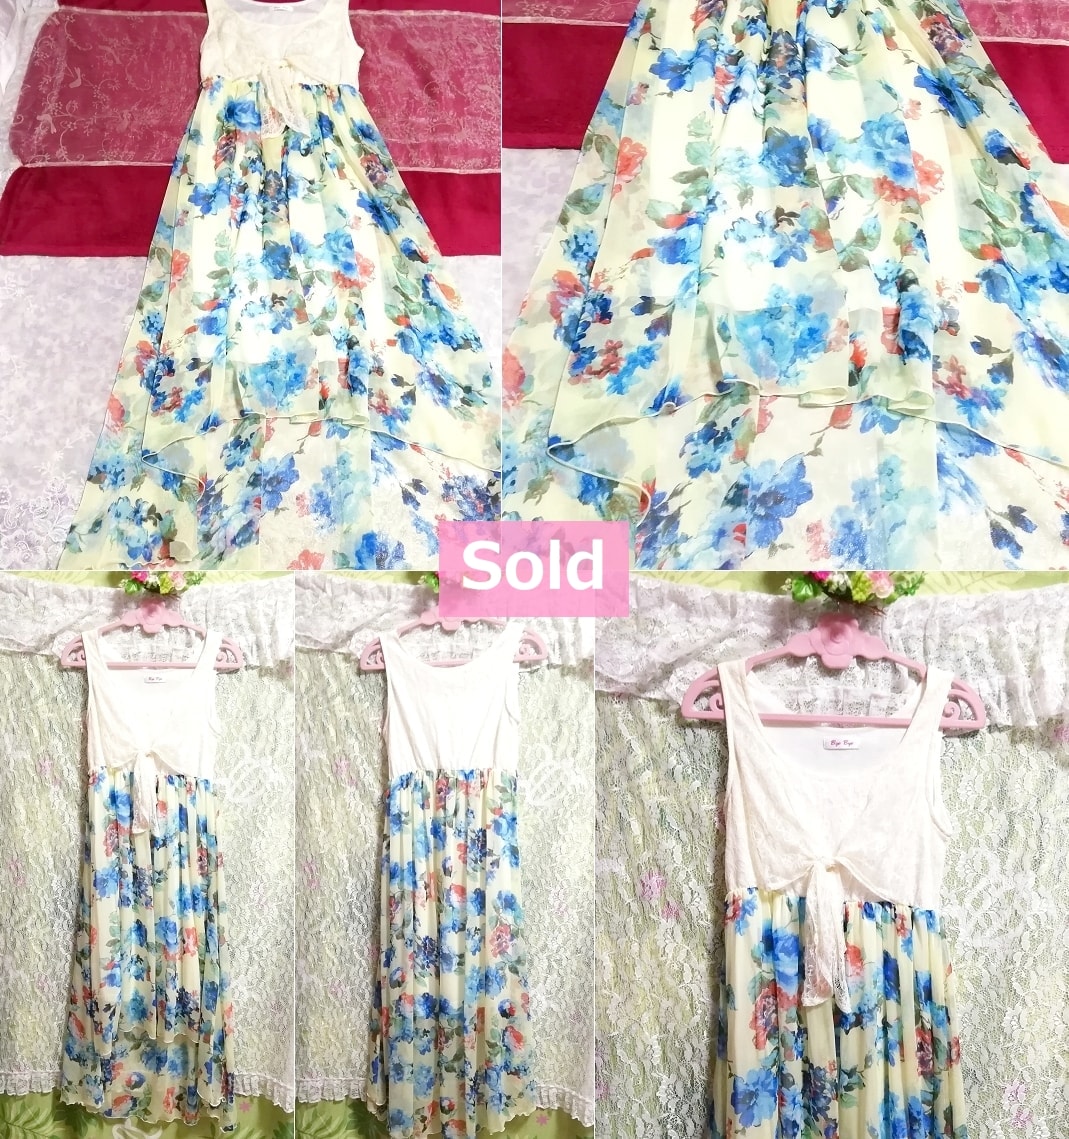 青花柄白レースシフォンフレアロングスカートマキシワンピース Blue floral pattern white lace chiffon flare skirt maxi onepiece dress